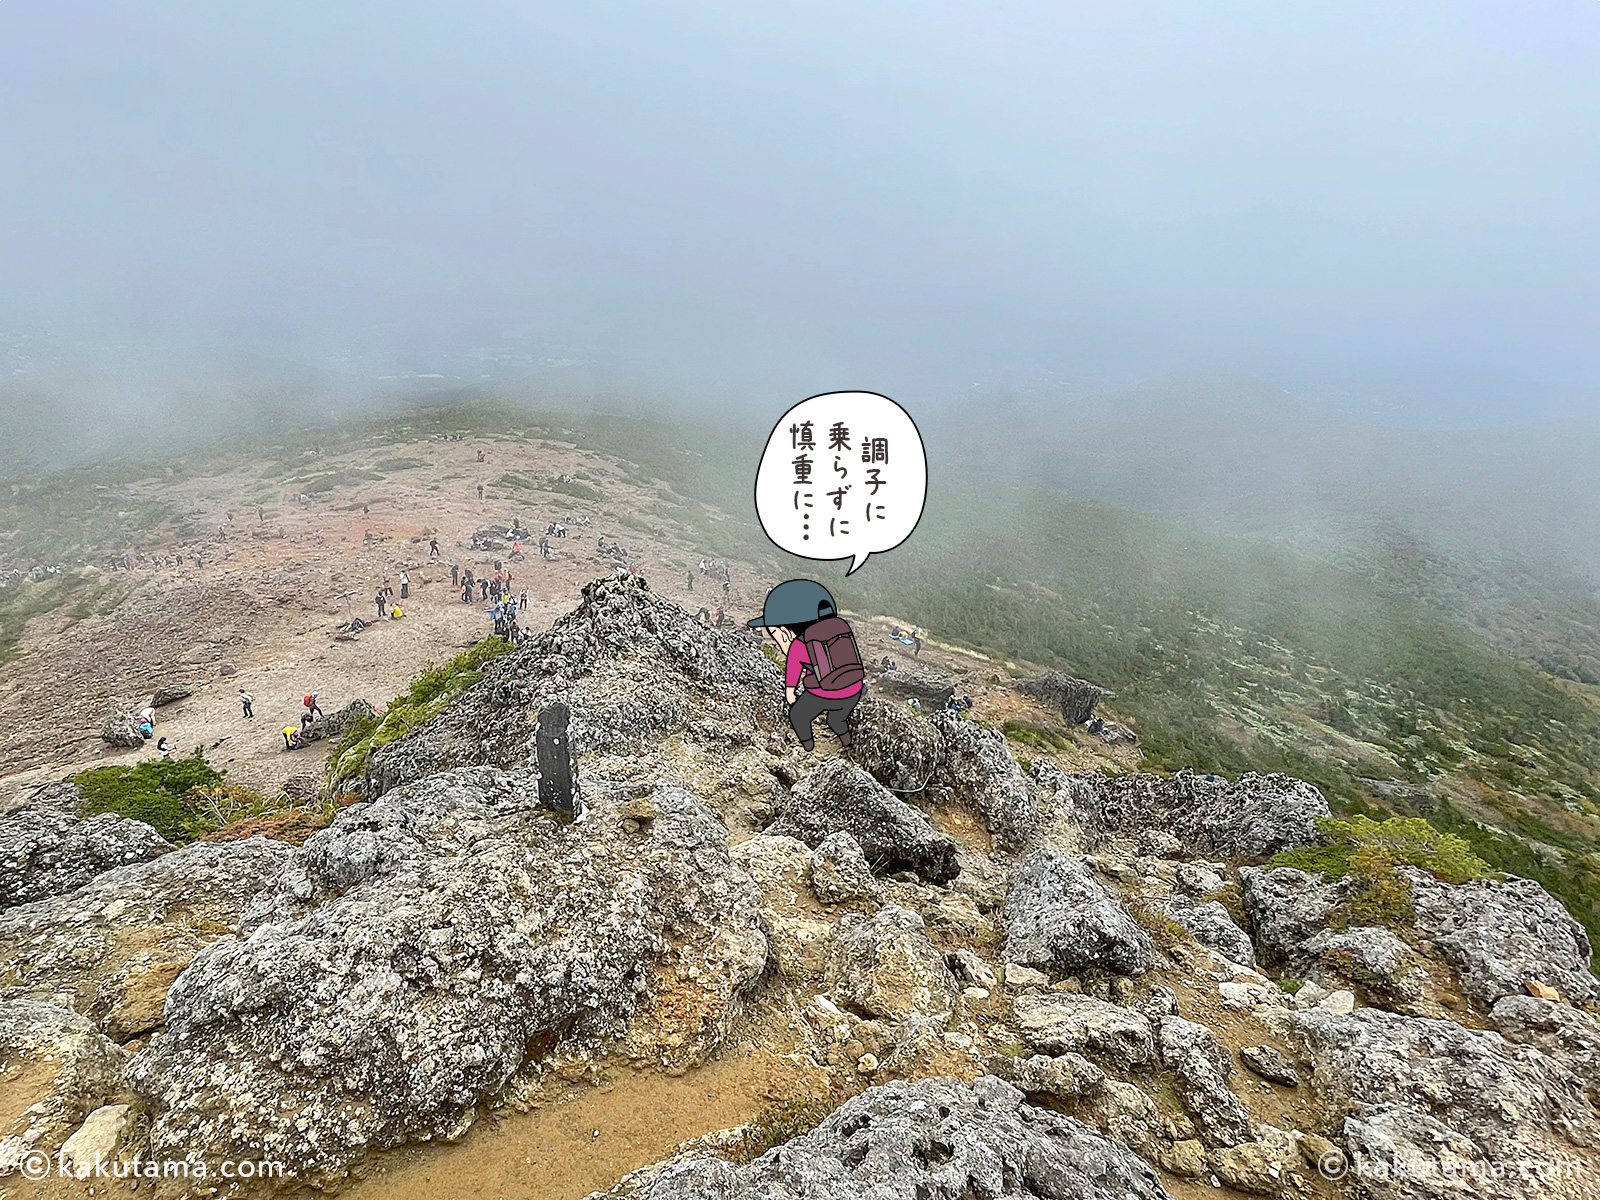 ガスっている安達太良山山頂から下山する写真と登山者のイラスト